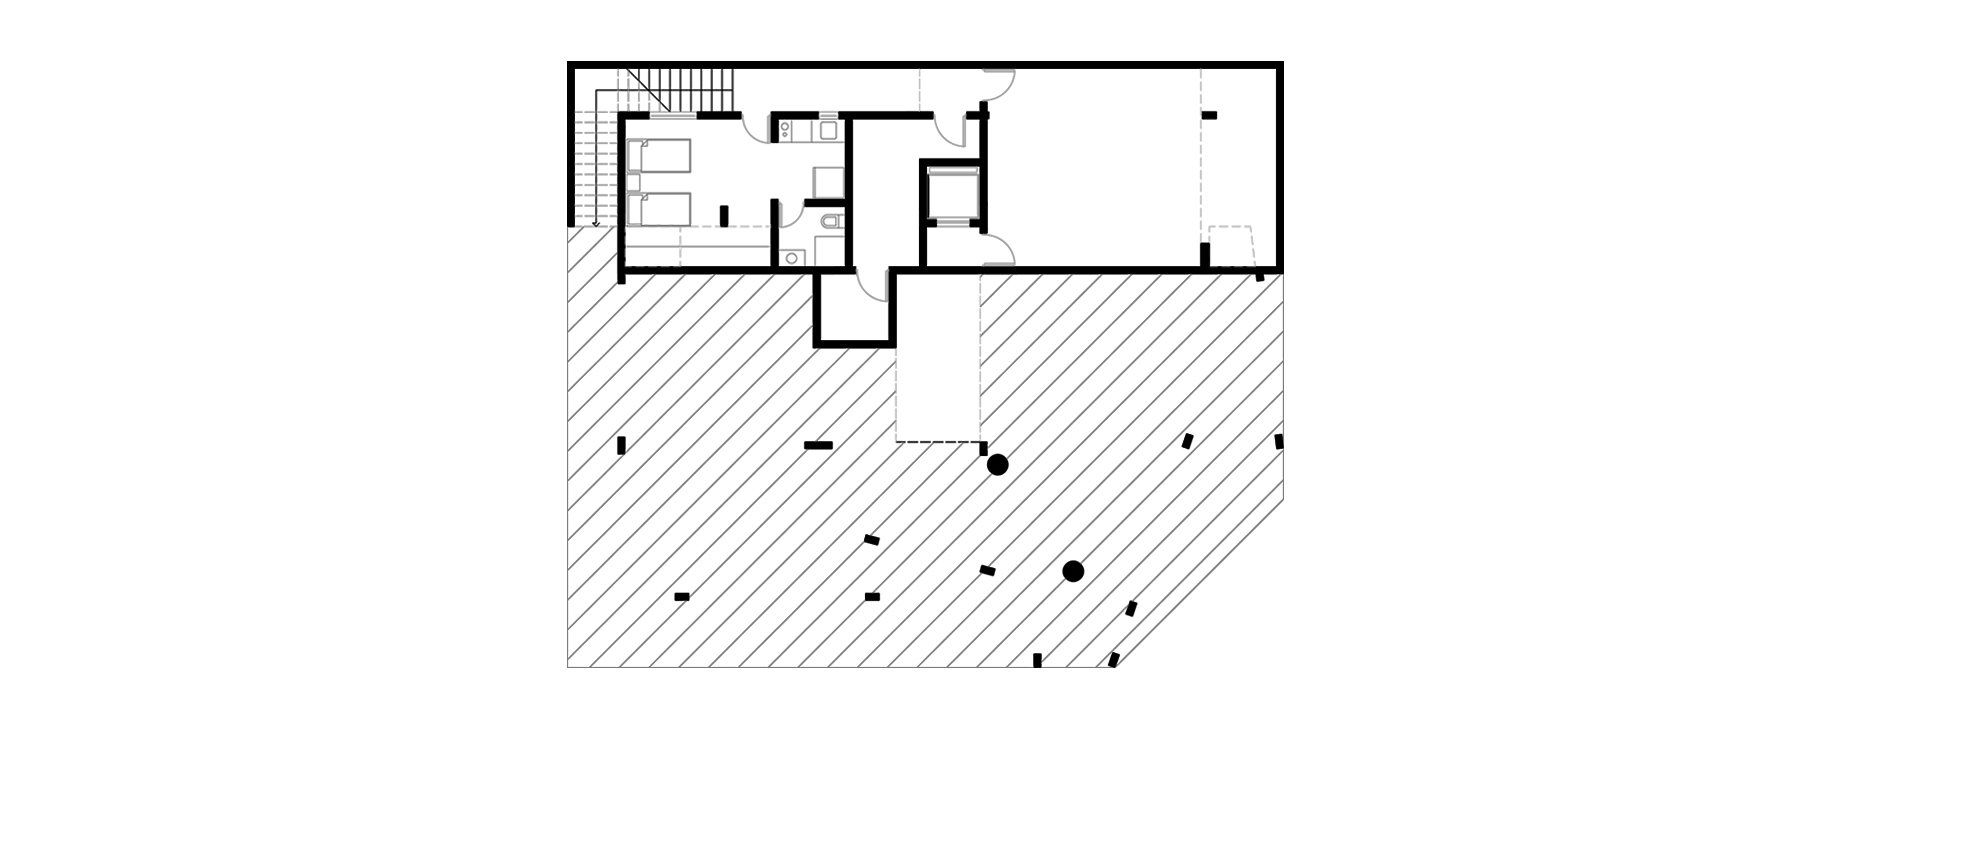 1Basement Floor Plan